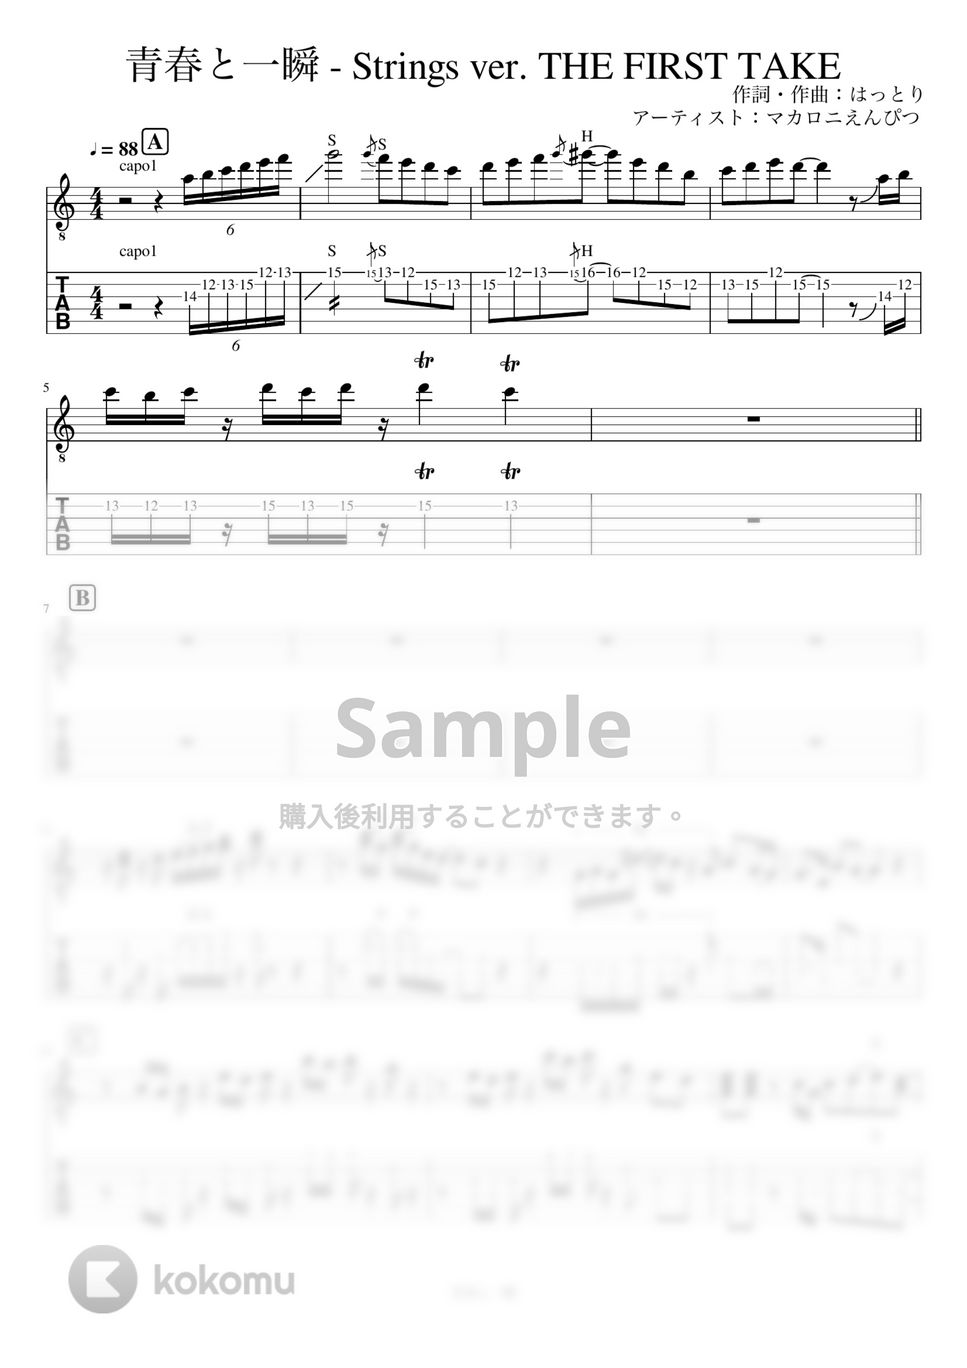 マカロニえんぴつ - 青春と一瞬 - Strings ver. THE FIRST TAKE (リードギター) by J-ROCKギターチャンネル